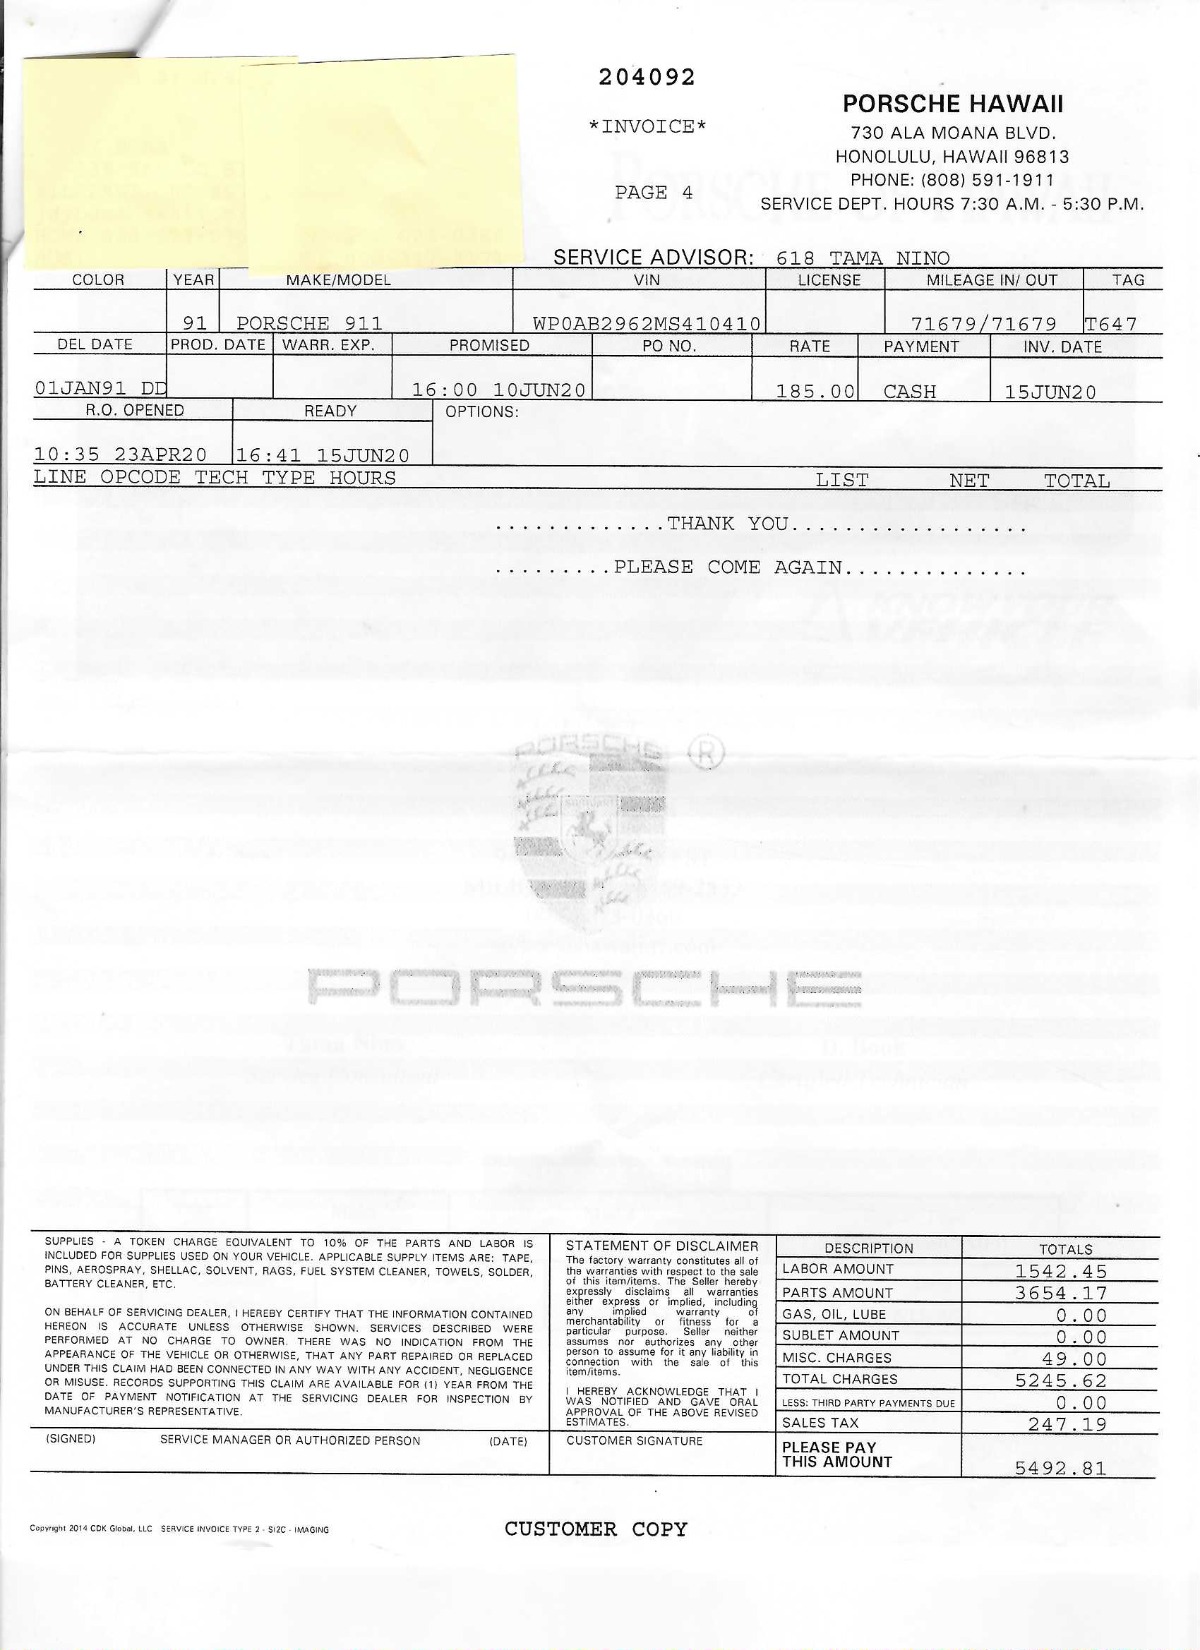 Used 1991 Porsche 964 Carrera Coupe | Los Angeles, CA